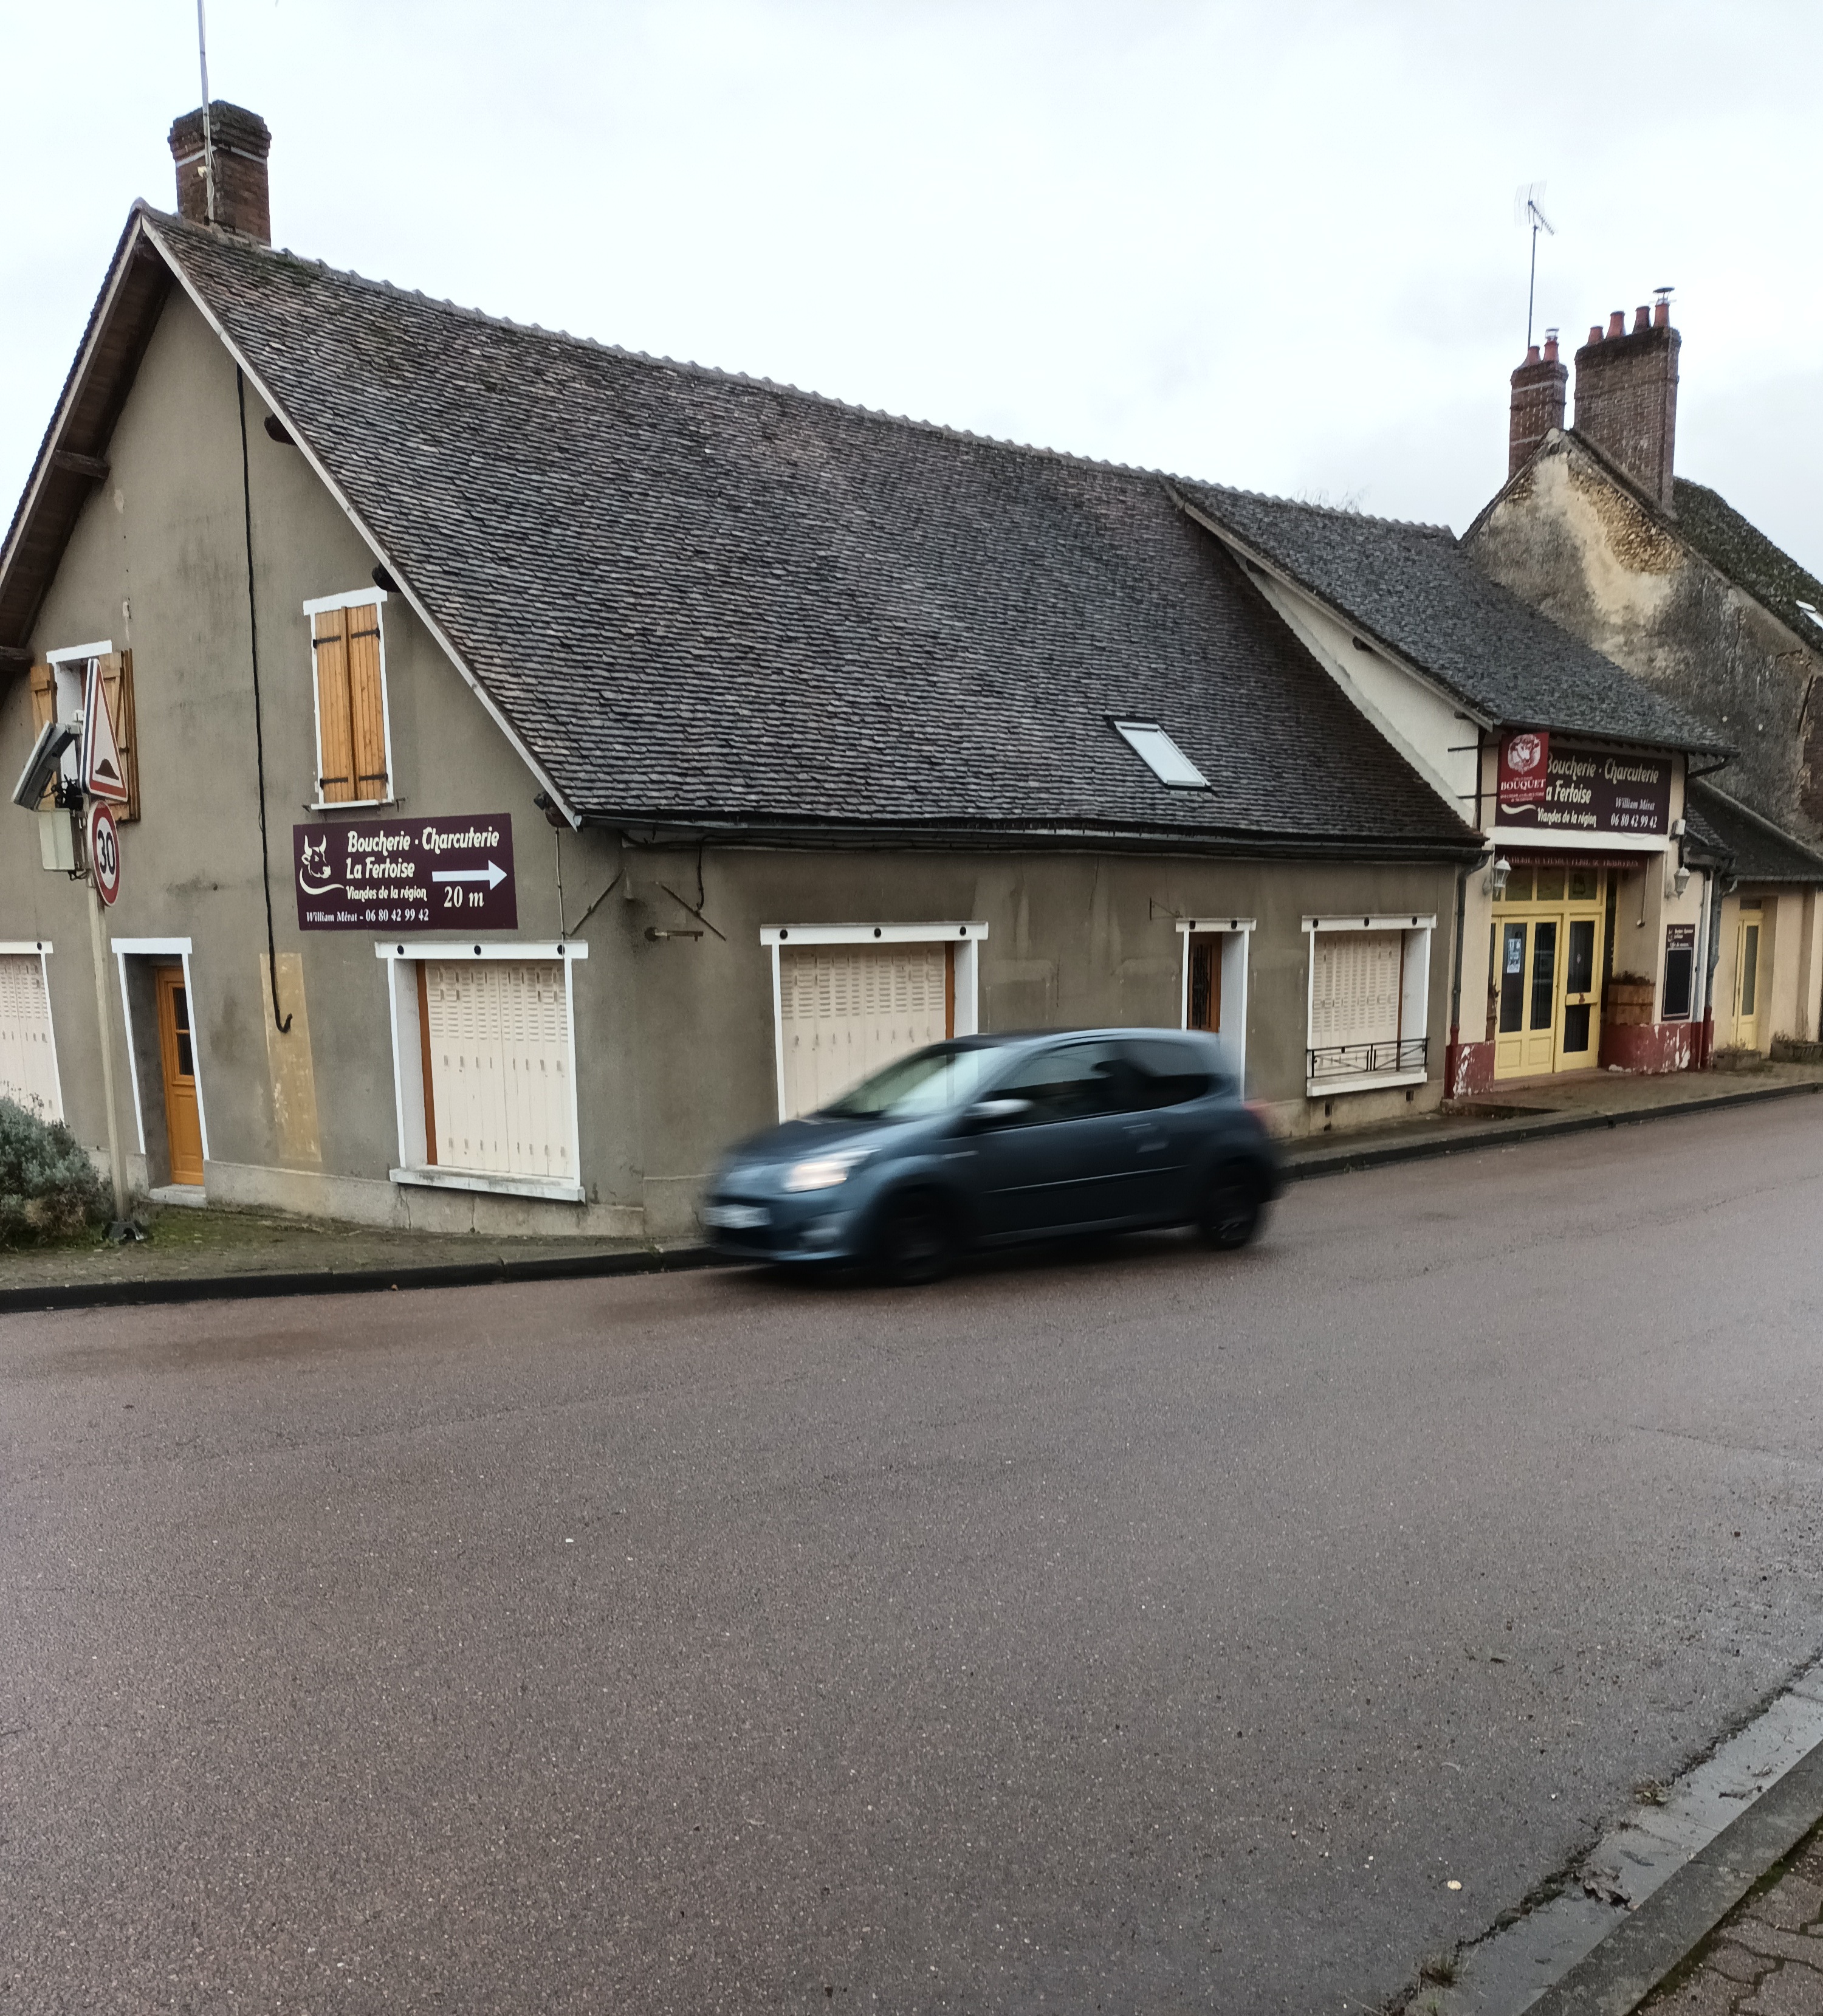 Présentation du village :
La Ferté Loupière, un pittoresque village de Puisaye (89 Yonne) possédant de nombreux atouts : 
-	A moins de 150 km de Paris, elle est située à quelques km d’un échangeur de l’autoroute A6. Elle est de ce fait la porte d’entrée nord de la Puisaye, région touristique. Ainsi, la départementale D3 qui la traverse (axe N/S) a un trafic assez dense avec des variations saisonnières et quotidiennes. La départementale D145 (axe E/O) est un peu moins fréquentée mais très régulièrement.
-	 28% des habitations sont des résidences secondaires. L’activité des week-ends et vacances en est largement augmentée. 
-	Son école – maternelle et primaire- accueille les enfants du village et des communes avoisinantes
-	Son église, classée car possédant une peinture murale exceptionnelle, attire des touristes de toute l’Europe.
-	Sa vie culturelle est enrichie par le dynamisme des associations (galerie d’art, manifestations populaires régulières, randonnées, …)
-	Son activité économique est variée : 6 commerces, des entreprises de bâtiments et travaux publics, un médecin, un cabinet d’infirmier, …  et, ce qui est aussi sa fierté, une agriculture diversifiée. 
Notre petite commune (près de 540 habitants) par sa position, son histoire et son dynamisme attire et rayonne. 
Présentation du commerce :
Jusqu’à l’automne 2020, nous avions un boucher passionné par son métier et qui avait su faire de son commerce une référence. Il savait choisir ses bêtes dans les alentours et veiller à un abattage respectueux. Il était fier de son jambon persillé et aimait à diversifier ses recettes. Malheureusement, la maladie nous l’a pris trop rapidement.
La commune a alors eu l’opportunité de racheter les murs de son commerce florissant. Puis, peut-être de manière précipitée, la boucherie a été louée à un boucher qui n’a pas fait preuve de sérieux. Finalement, cet été, il a donné son congé.
Les élus ont relevé leurs manches et accompli un important nettoyage des locaux.
La boutique est de nouveau accessible à la location. Elle se compose d’un magasin équipé, d’un laboratoire adjacent à équiper et de chambres froides. Des espaces donnant sur la cour intérieure peuvent être intégrés au bail. 
Le bail commercial pourra être associé à la location d’un logement indépendant.
Les équipements professionnels, le mobilier correspondront à une création de fond qui restera à l’exploitant. 
Votre contact : 	 Mairie de la Ferté Loupière -1 place de la Mairie – 89110 La Ferté Loupière
		 03-86-73-14-87
		 mairie-la-ferte-loupiere@orange.fr